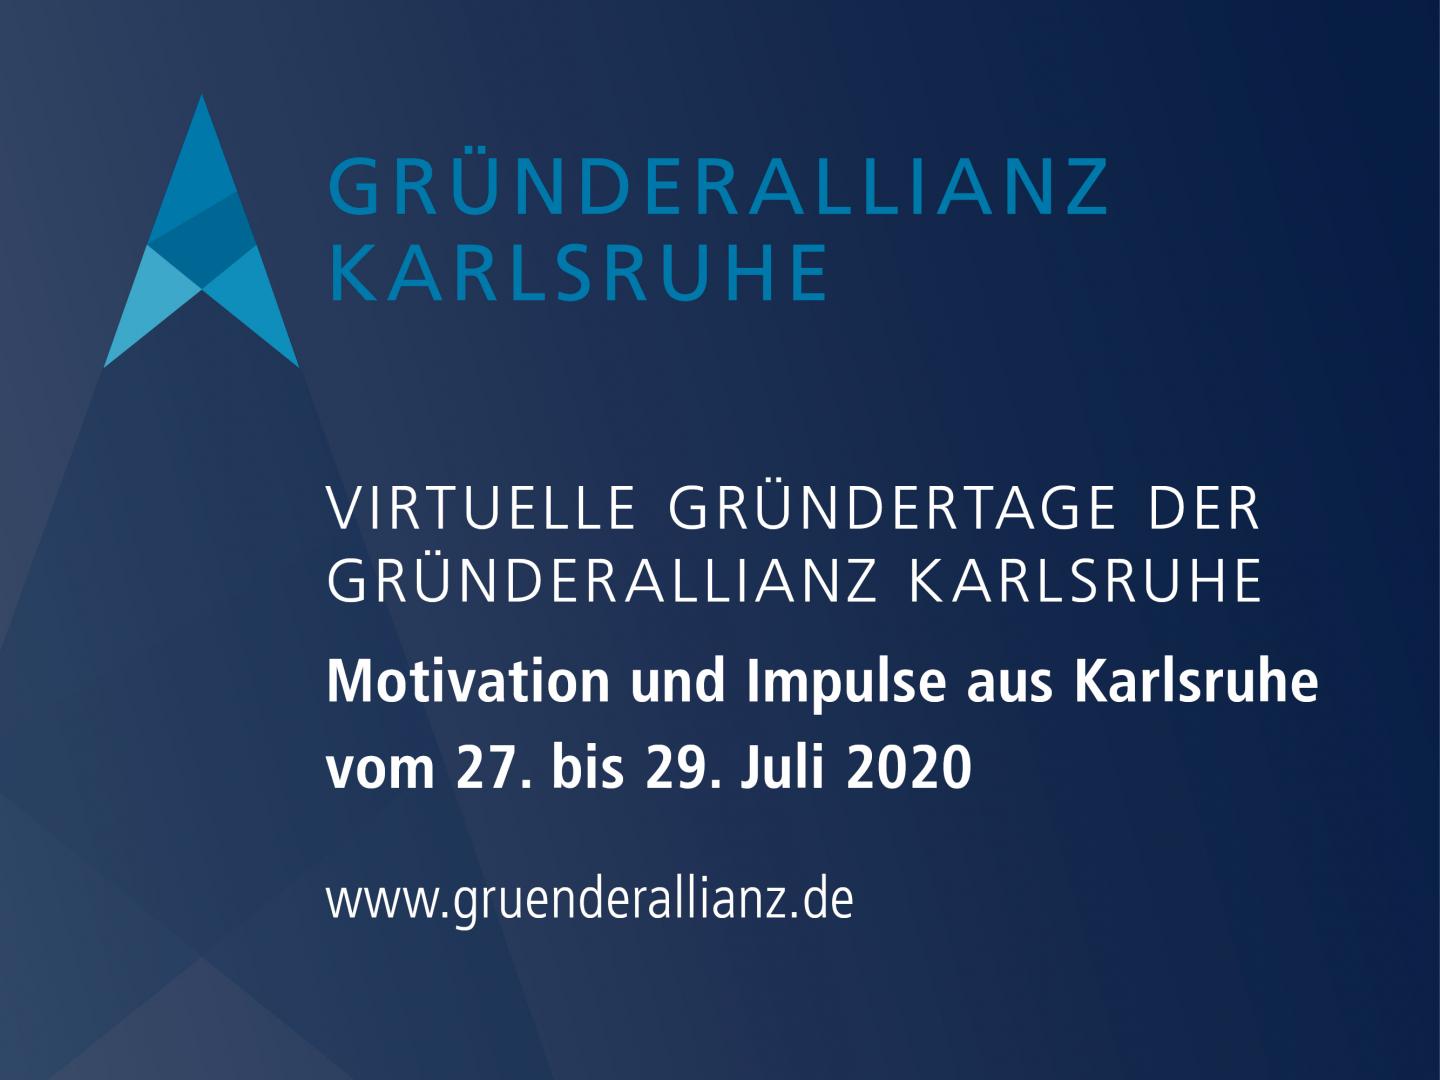 27.-29.07.2020 - Virtueller Gründertag der Gründerallianz Karlsruhe